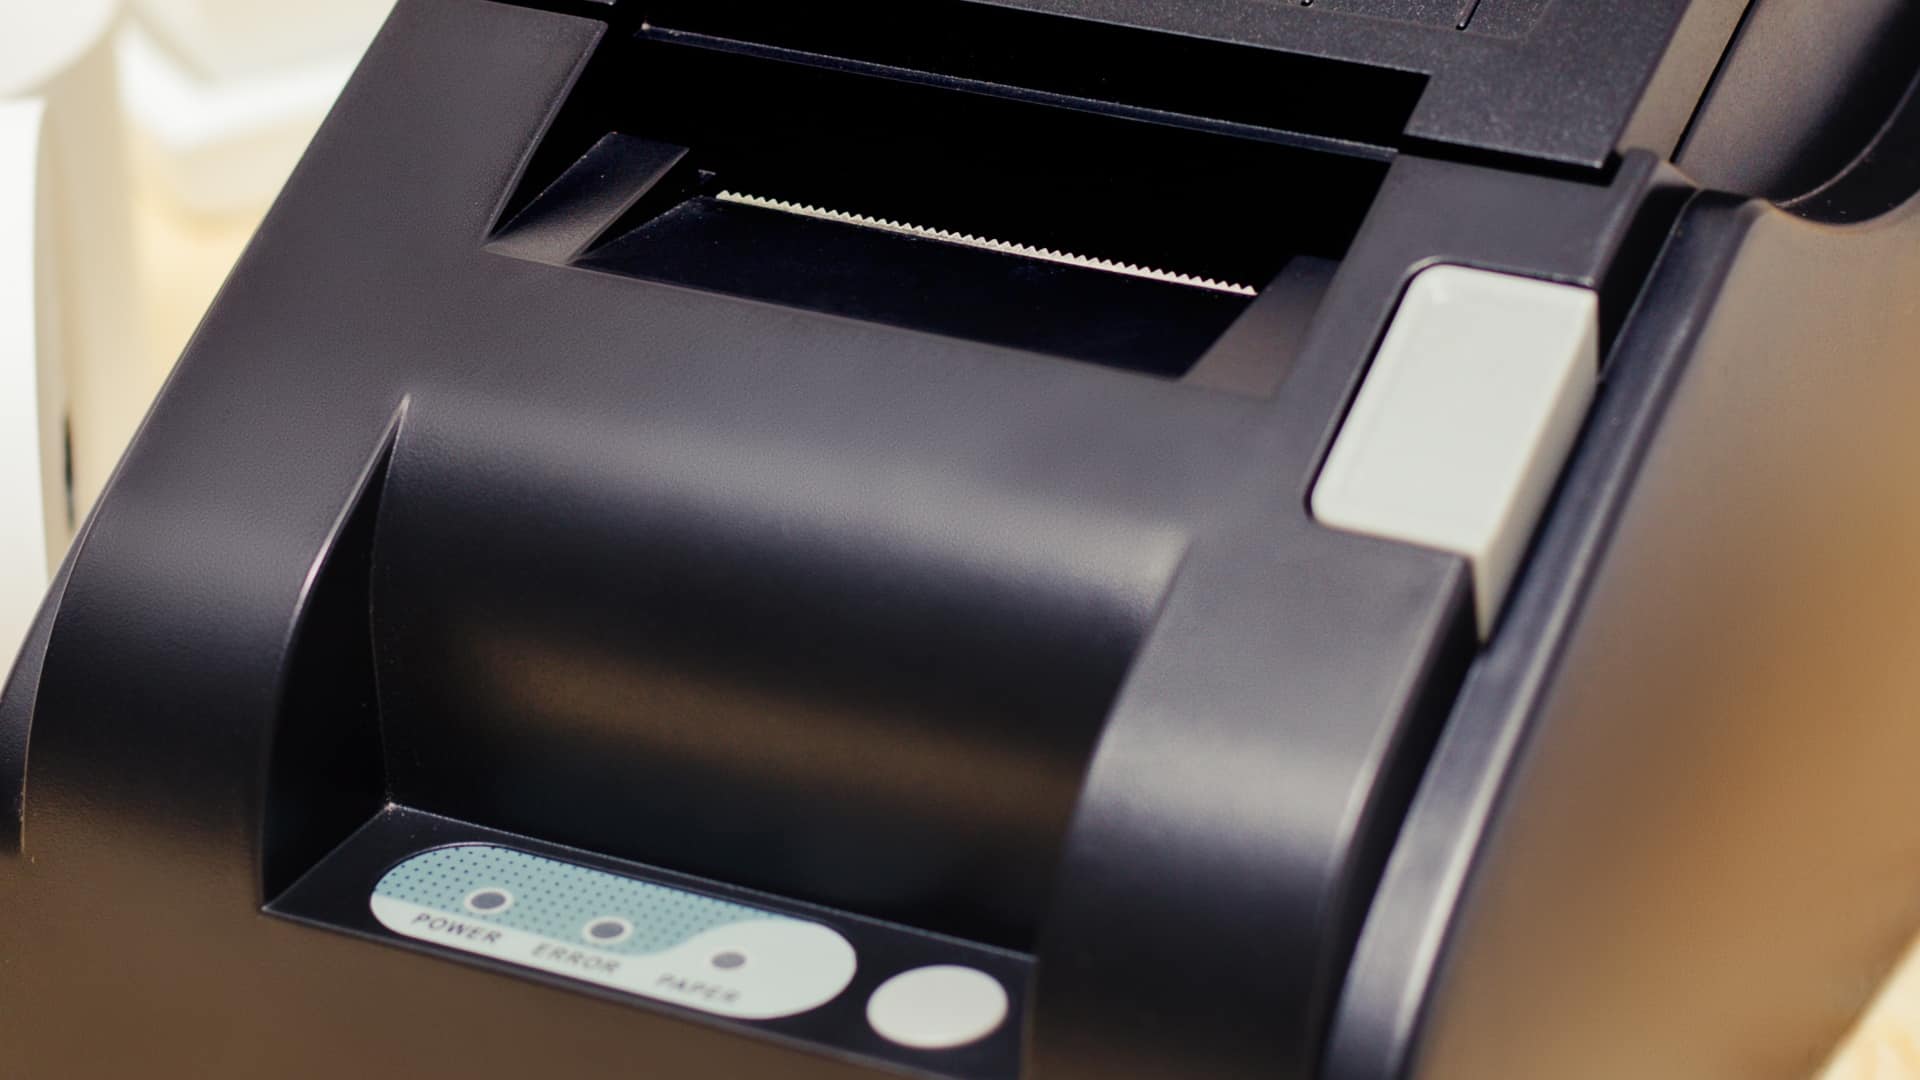 Impresora de etiquetas  ¿Qué es y como funciona este aparato?